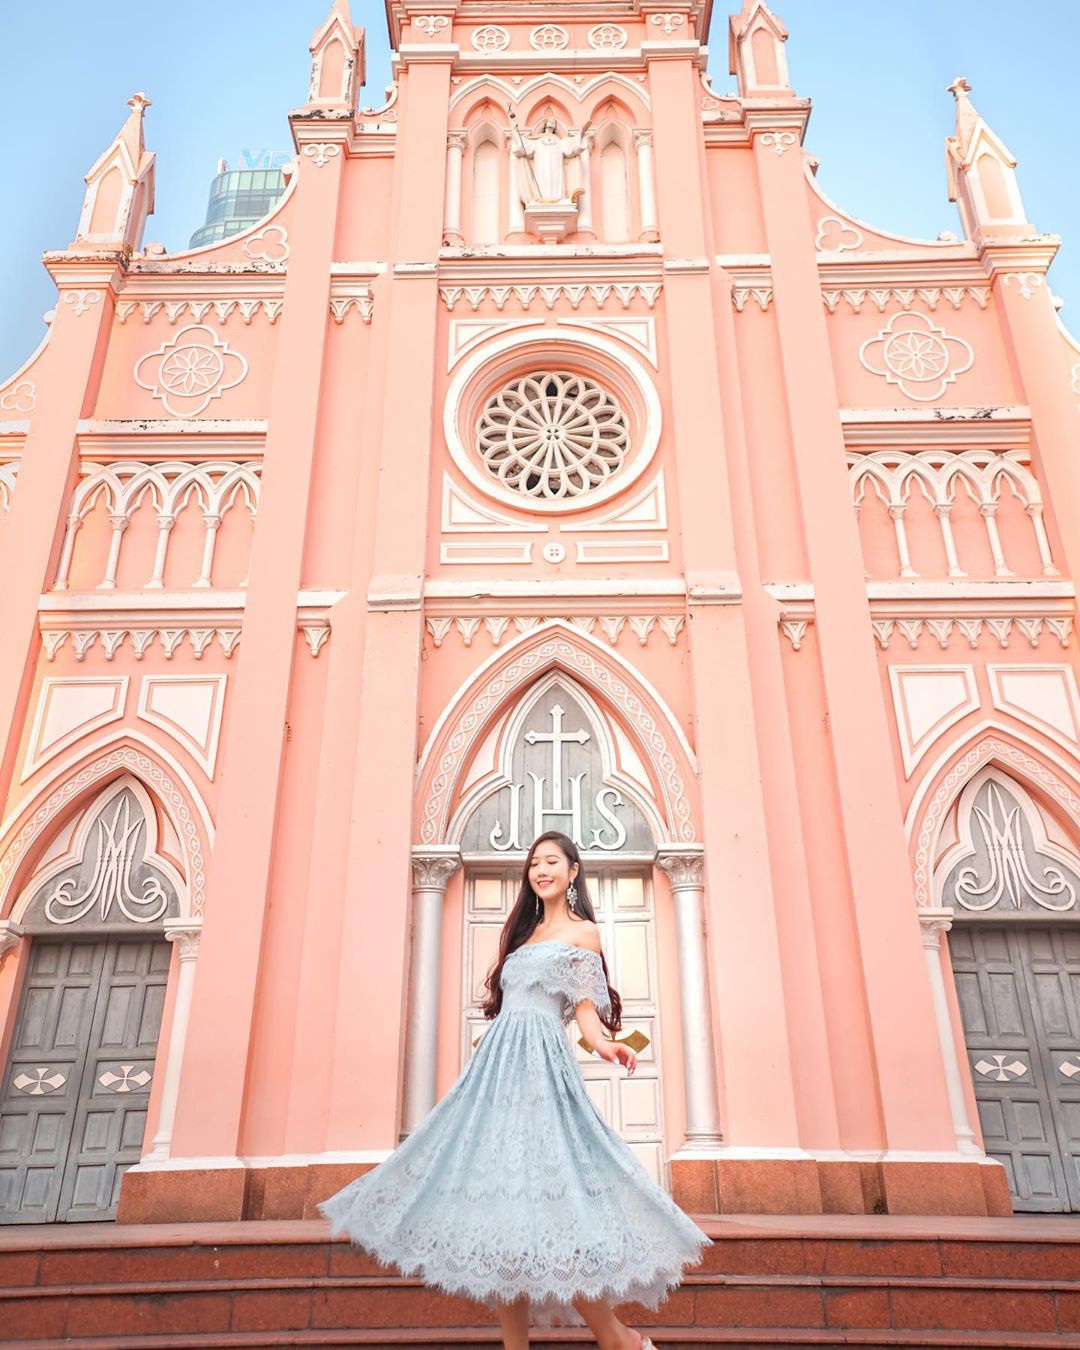 'Chụp cháy máy' ở 3 nhà thờ màu hồng đẹp nhất Việt Nam - Ảnh 4.